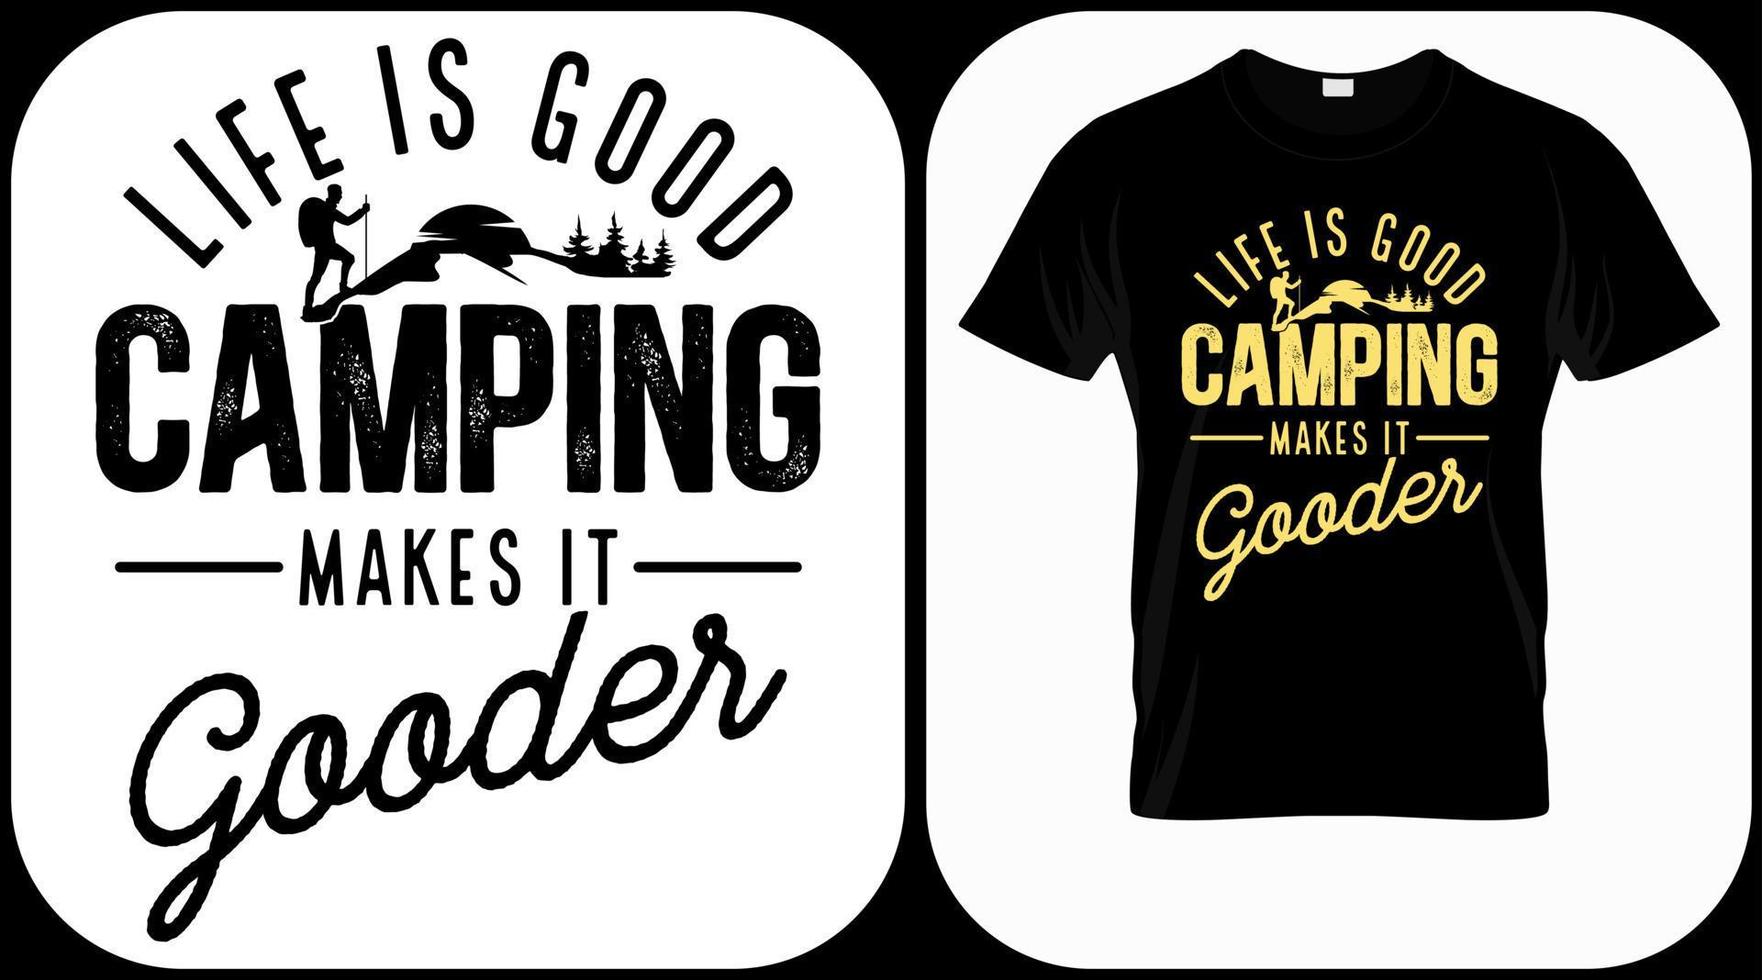 a vida é boa, acampar torna-a melhor. vetor de gráficos de acampamento, explorador vintage, aventura, deserto. símbolo de citações de aventura ao ar livre. perfeito para estampas de t-shirt, cartazes.